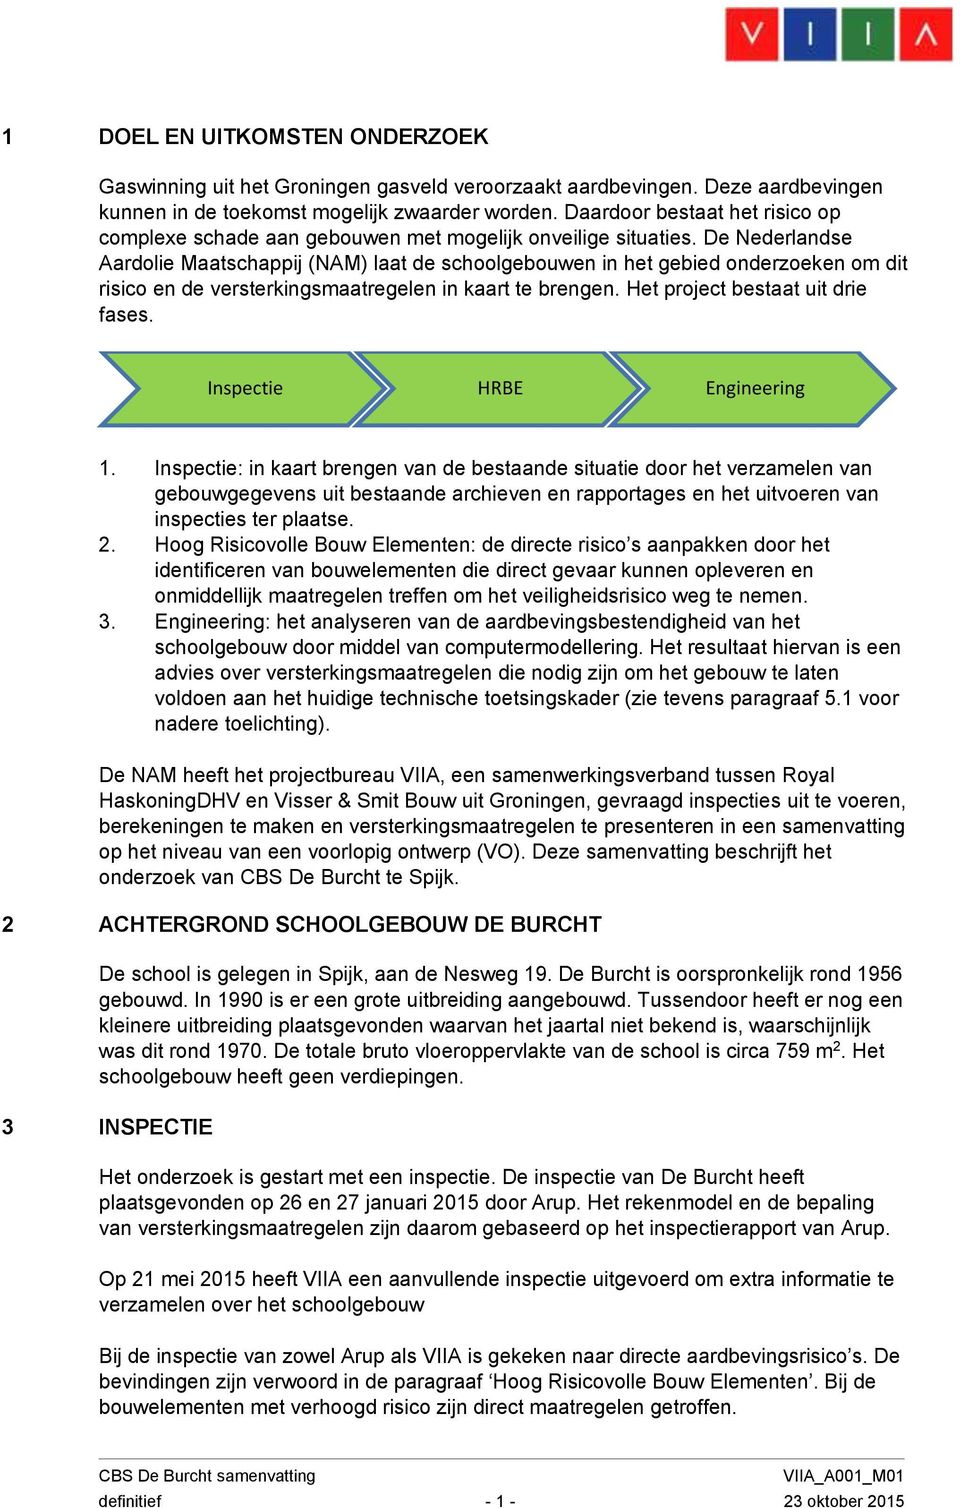 De Nederlandse Aardolie Maatschappij (NAM) laat de schoolgebouwen in het gebied onderzoeken om dit risico en de versterkingsmaatregelen in kaart te brengen. Het project bestaat uit drie fases.